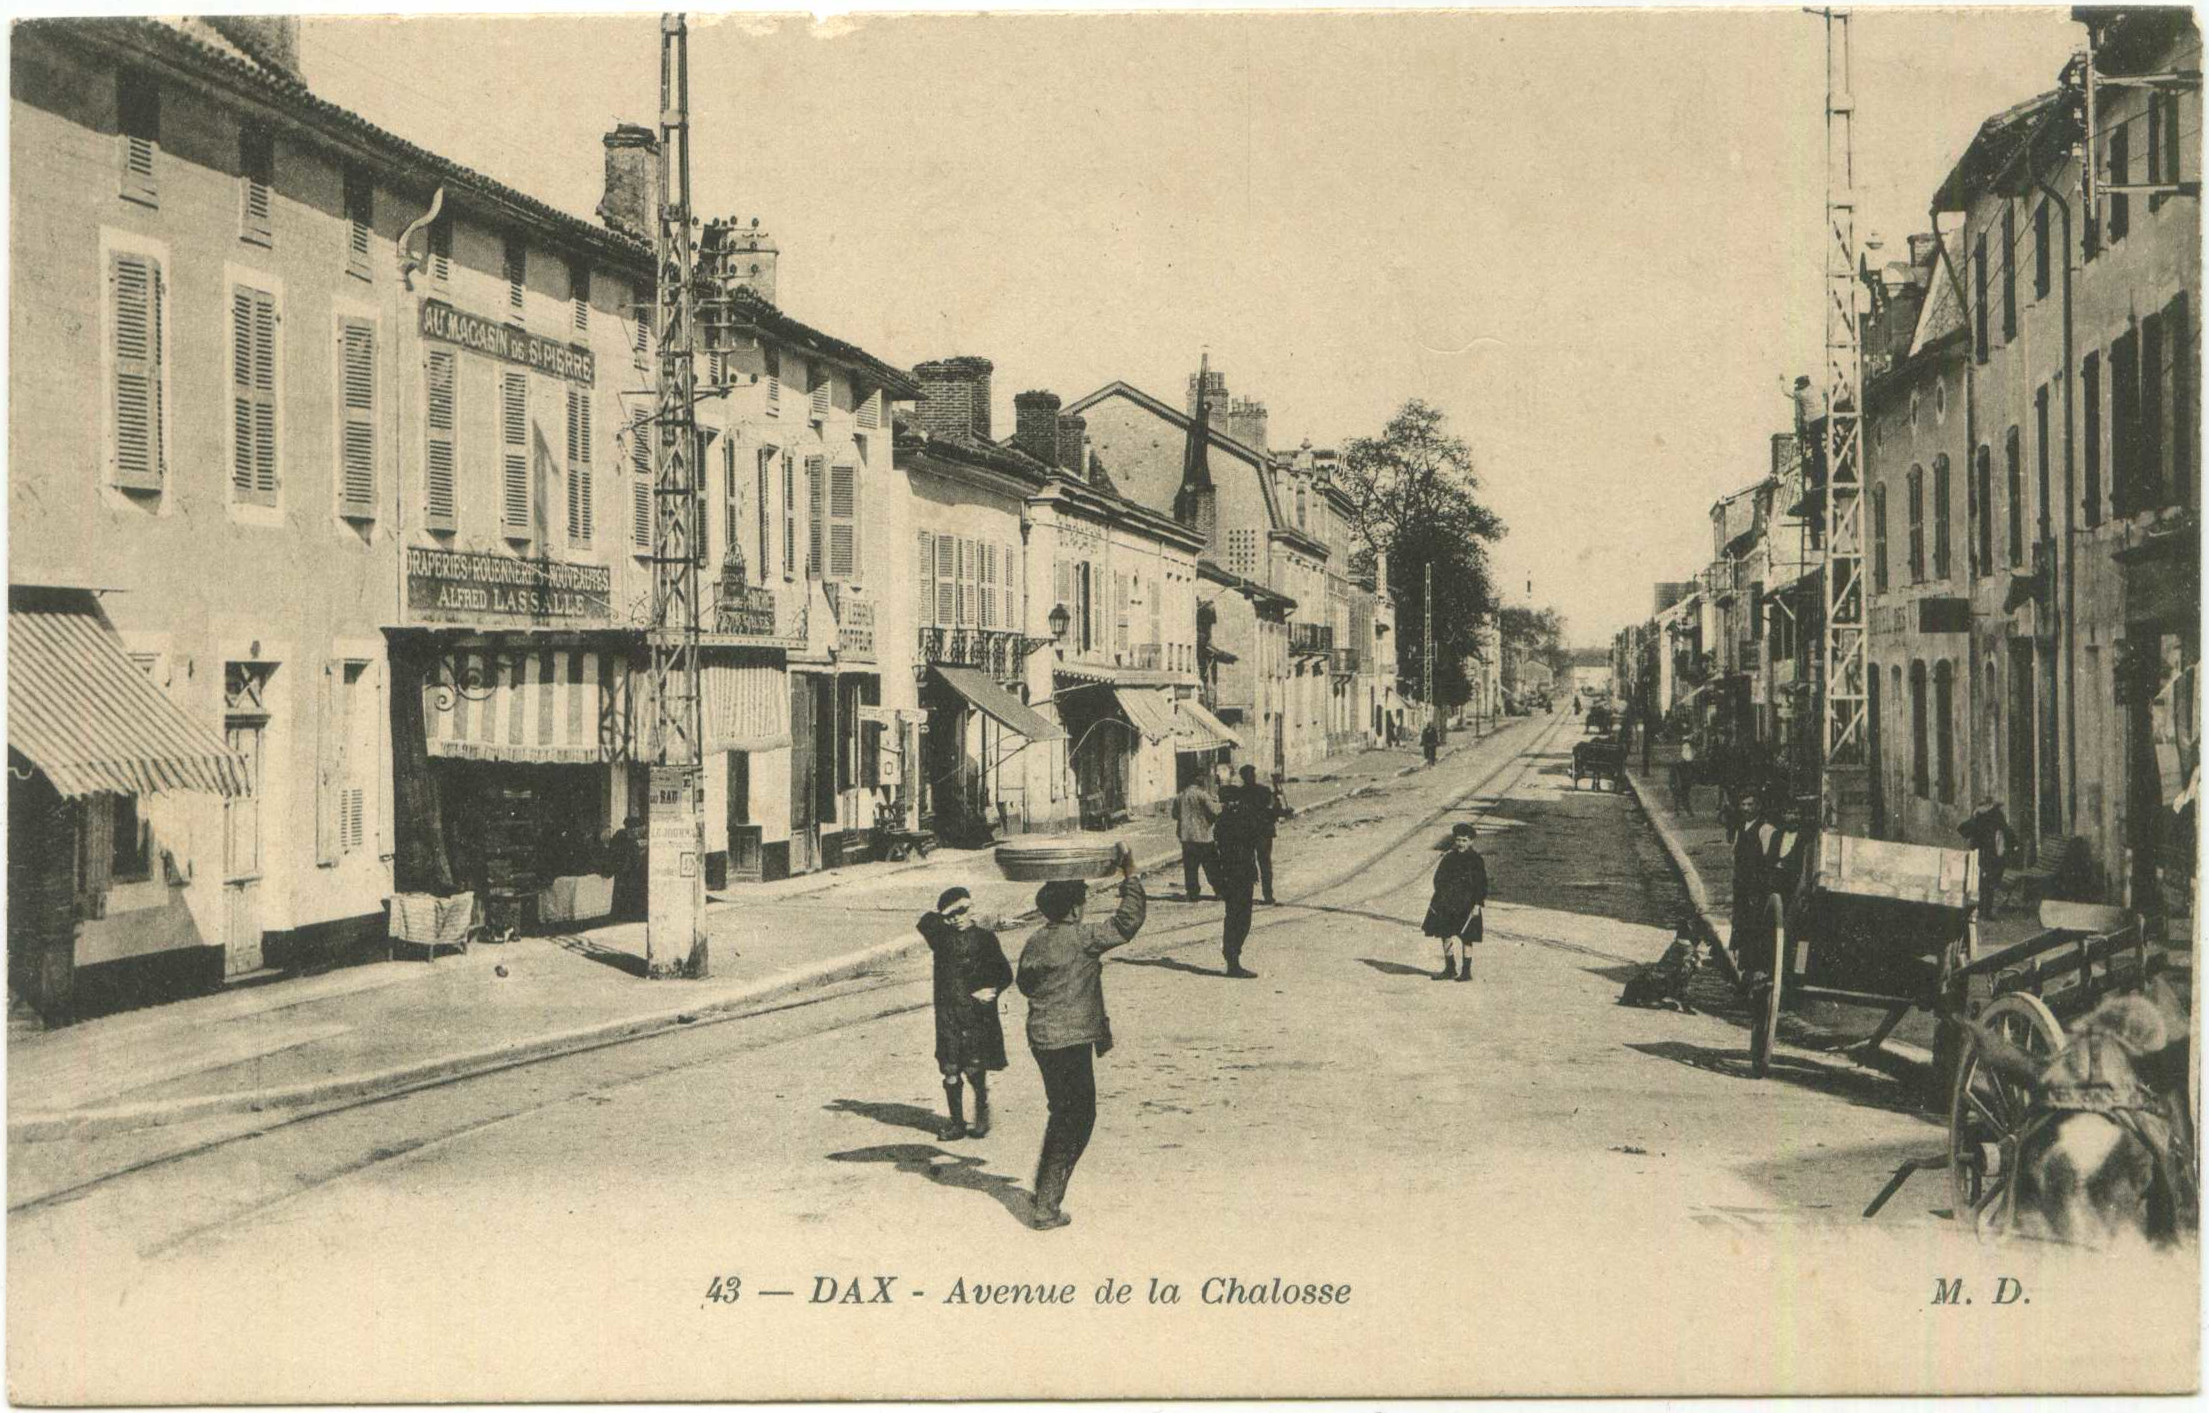 Dax - Avenue de la Chalosse